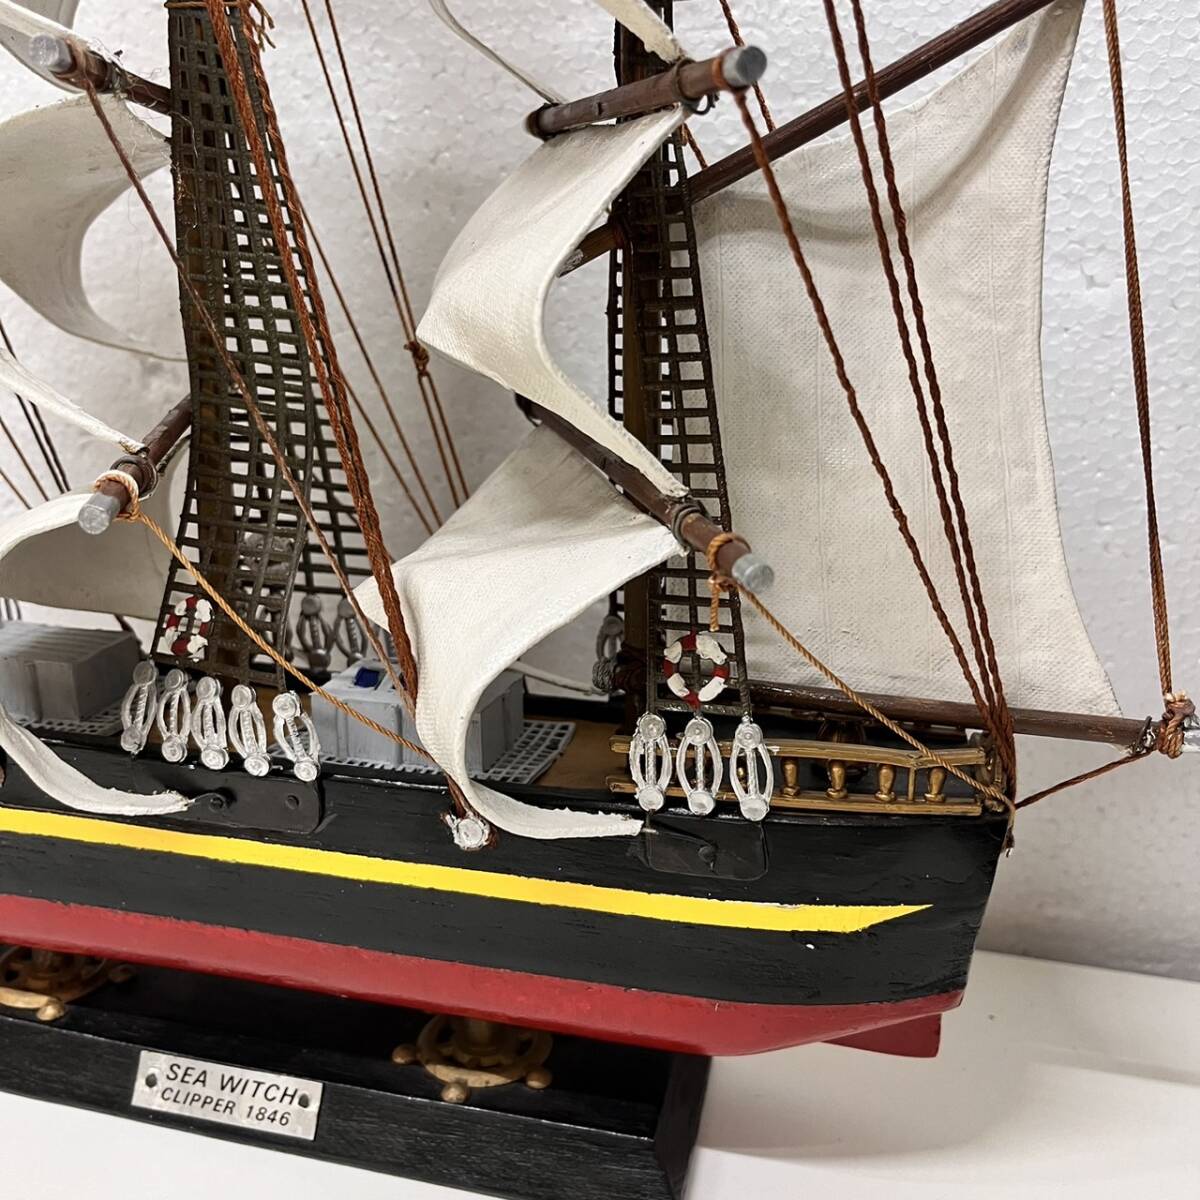 【C-25082】SEA WITCH 1846年 大型 帆船模型 帆船 船 模型 木製 置物 インテリア 飾り コレクション オブジェ コレクション_画像6